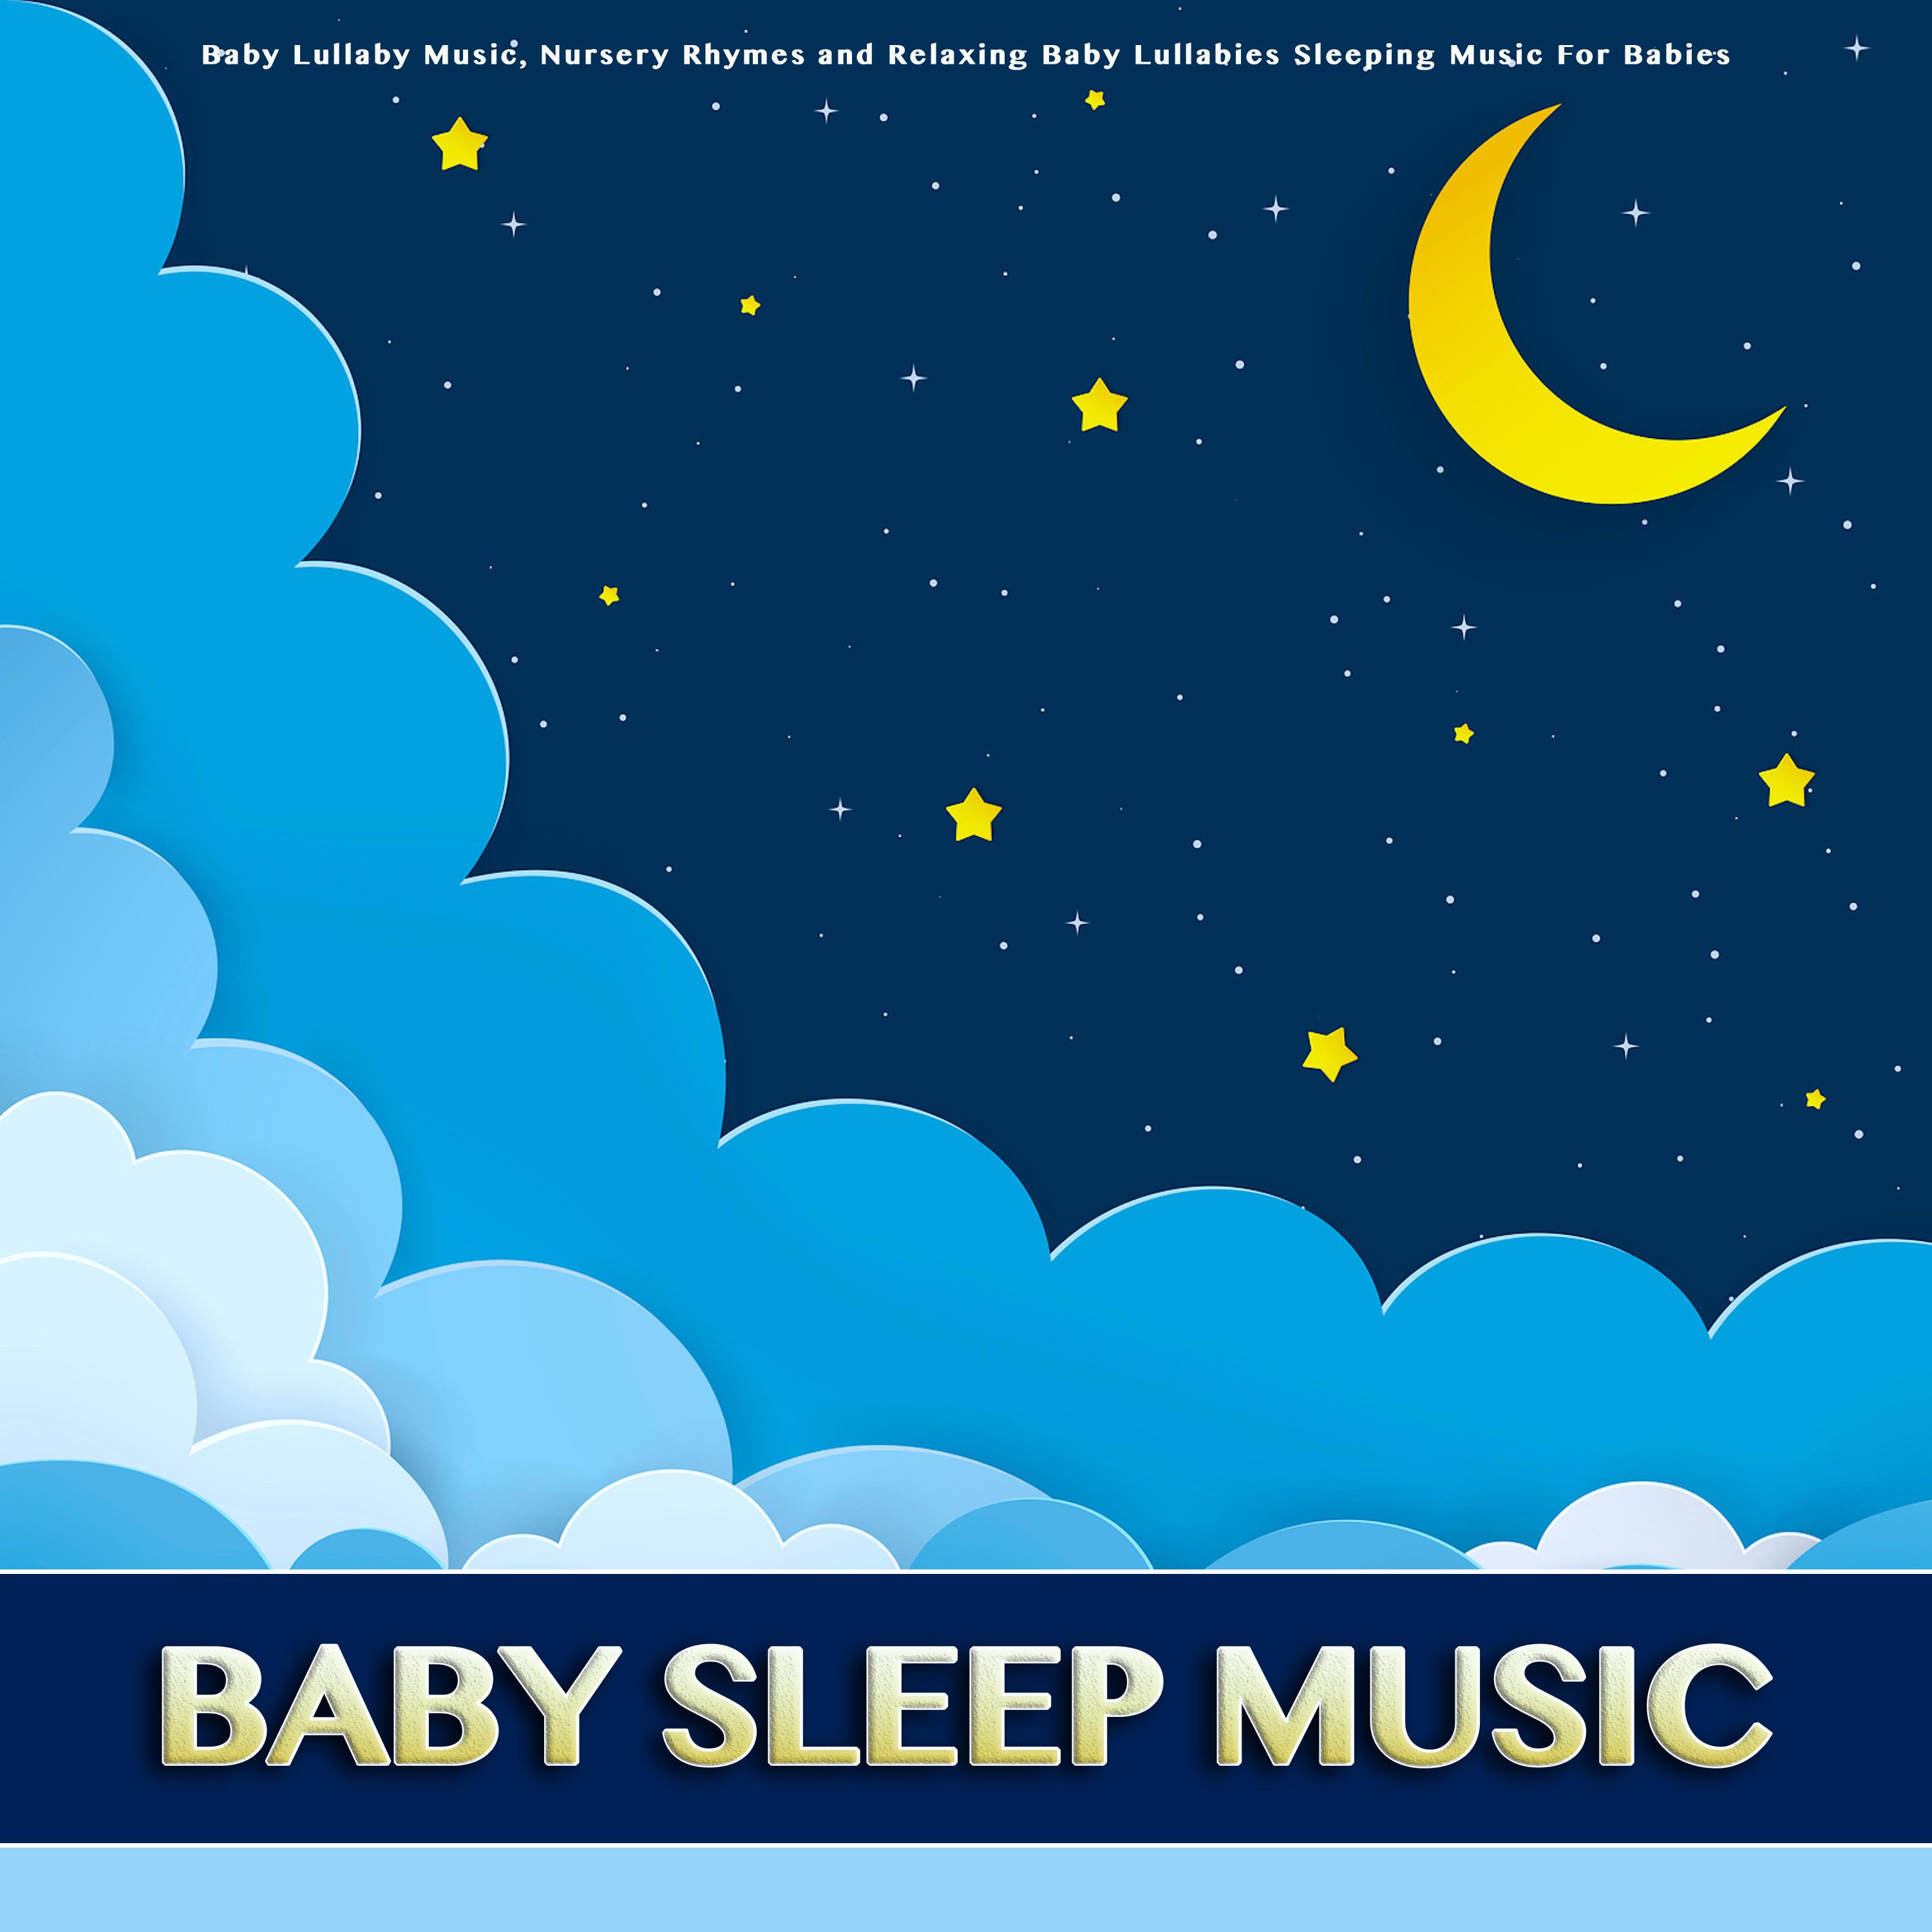 London Bridge Is Falling Down - Baby Sleep Music - Baby Lullabies - Nursery Rhymes